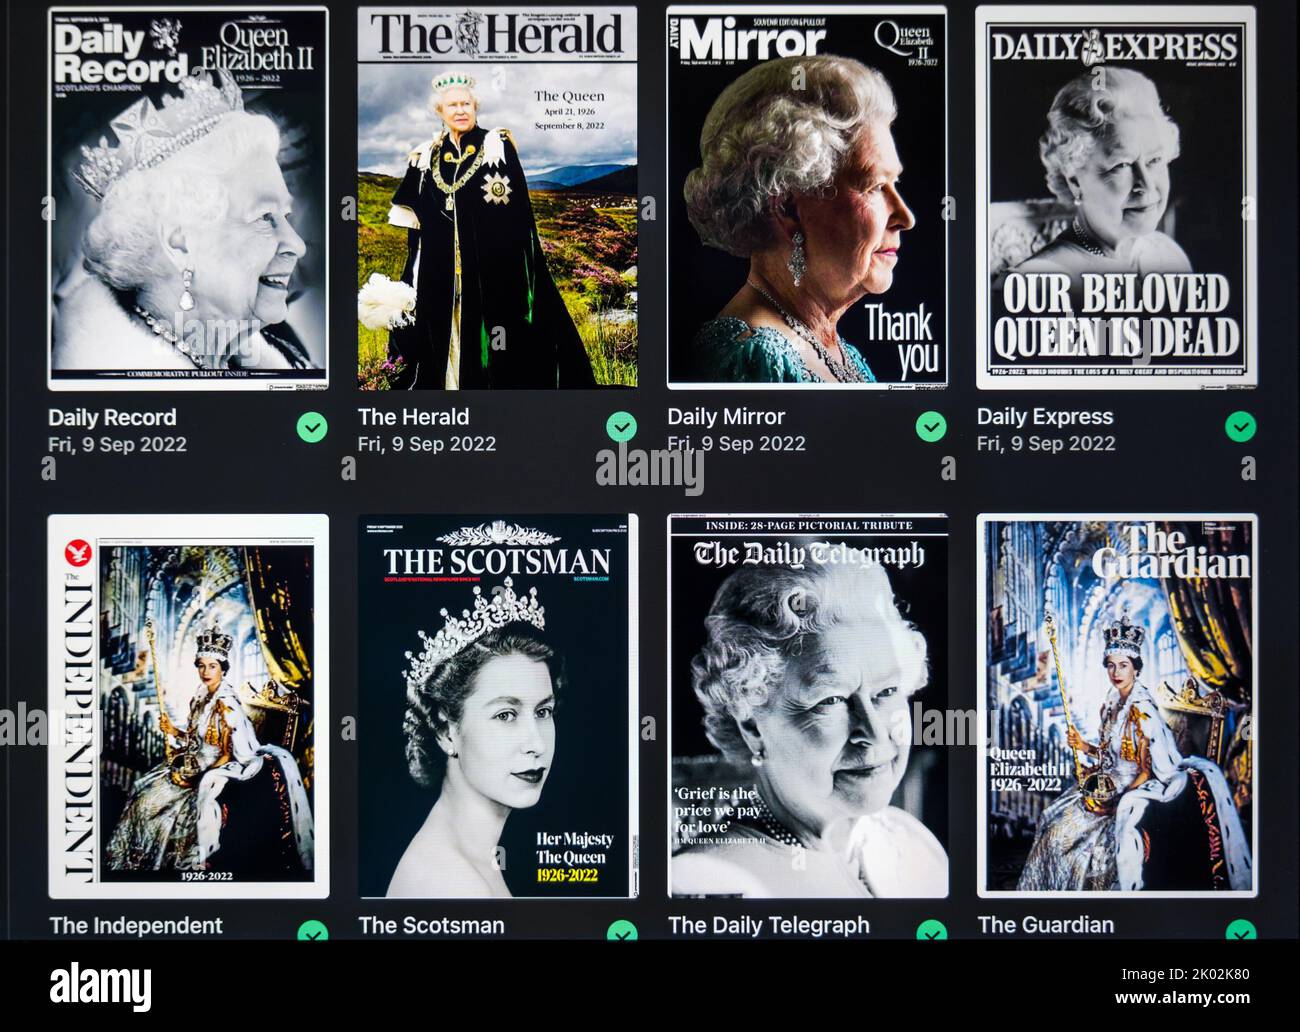 Regno Unito, settembre 9th 2022. La morte di sua Maestà la Regina Elisabetta II è riportata attraverso le prime pagine dei giornali britannici con un ritratto della Regina su ogni copertina anteriore visualizzata sullo schermo di un iPad. Credit: Sally Anderson/Alamy Live News Foto Stock